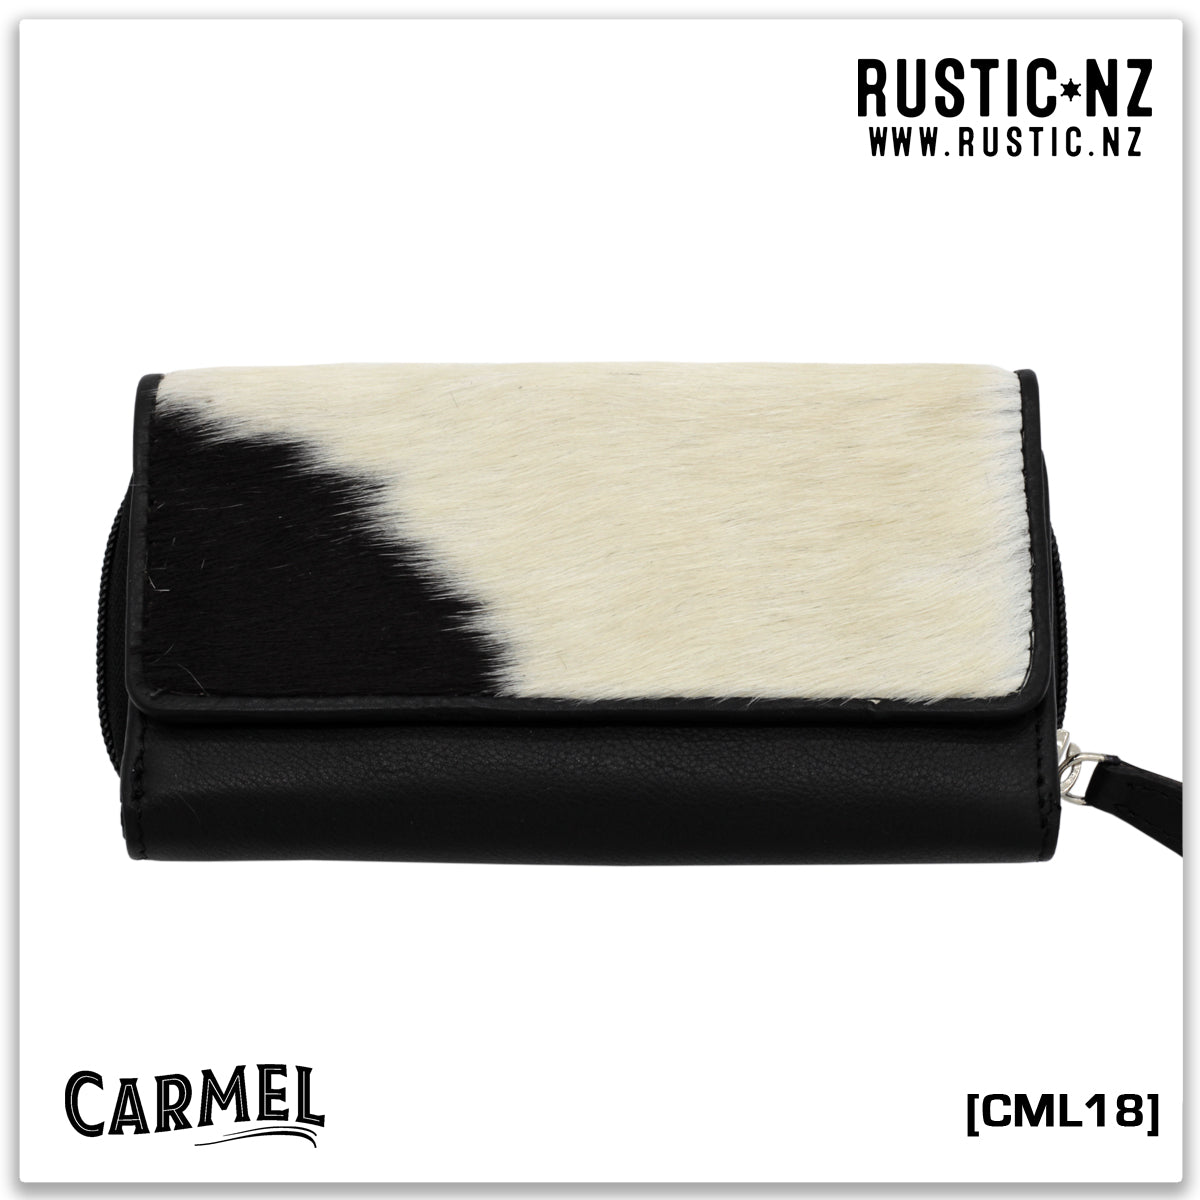 CML18 | Carmel Wallet Black & White, Black leather